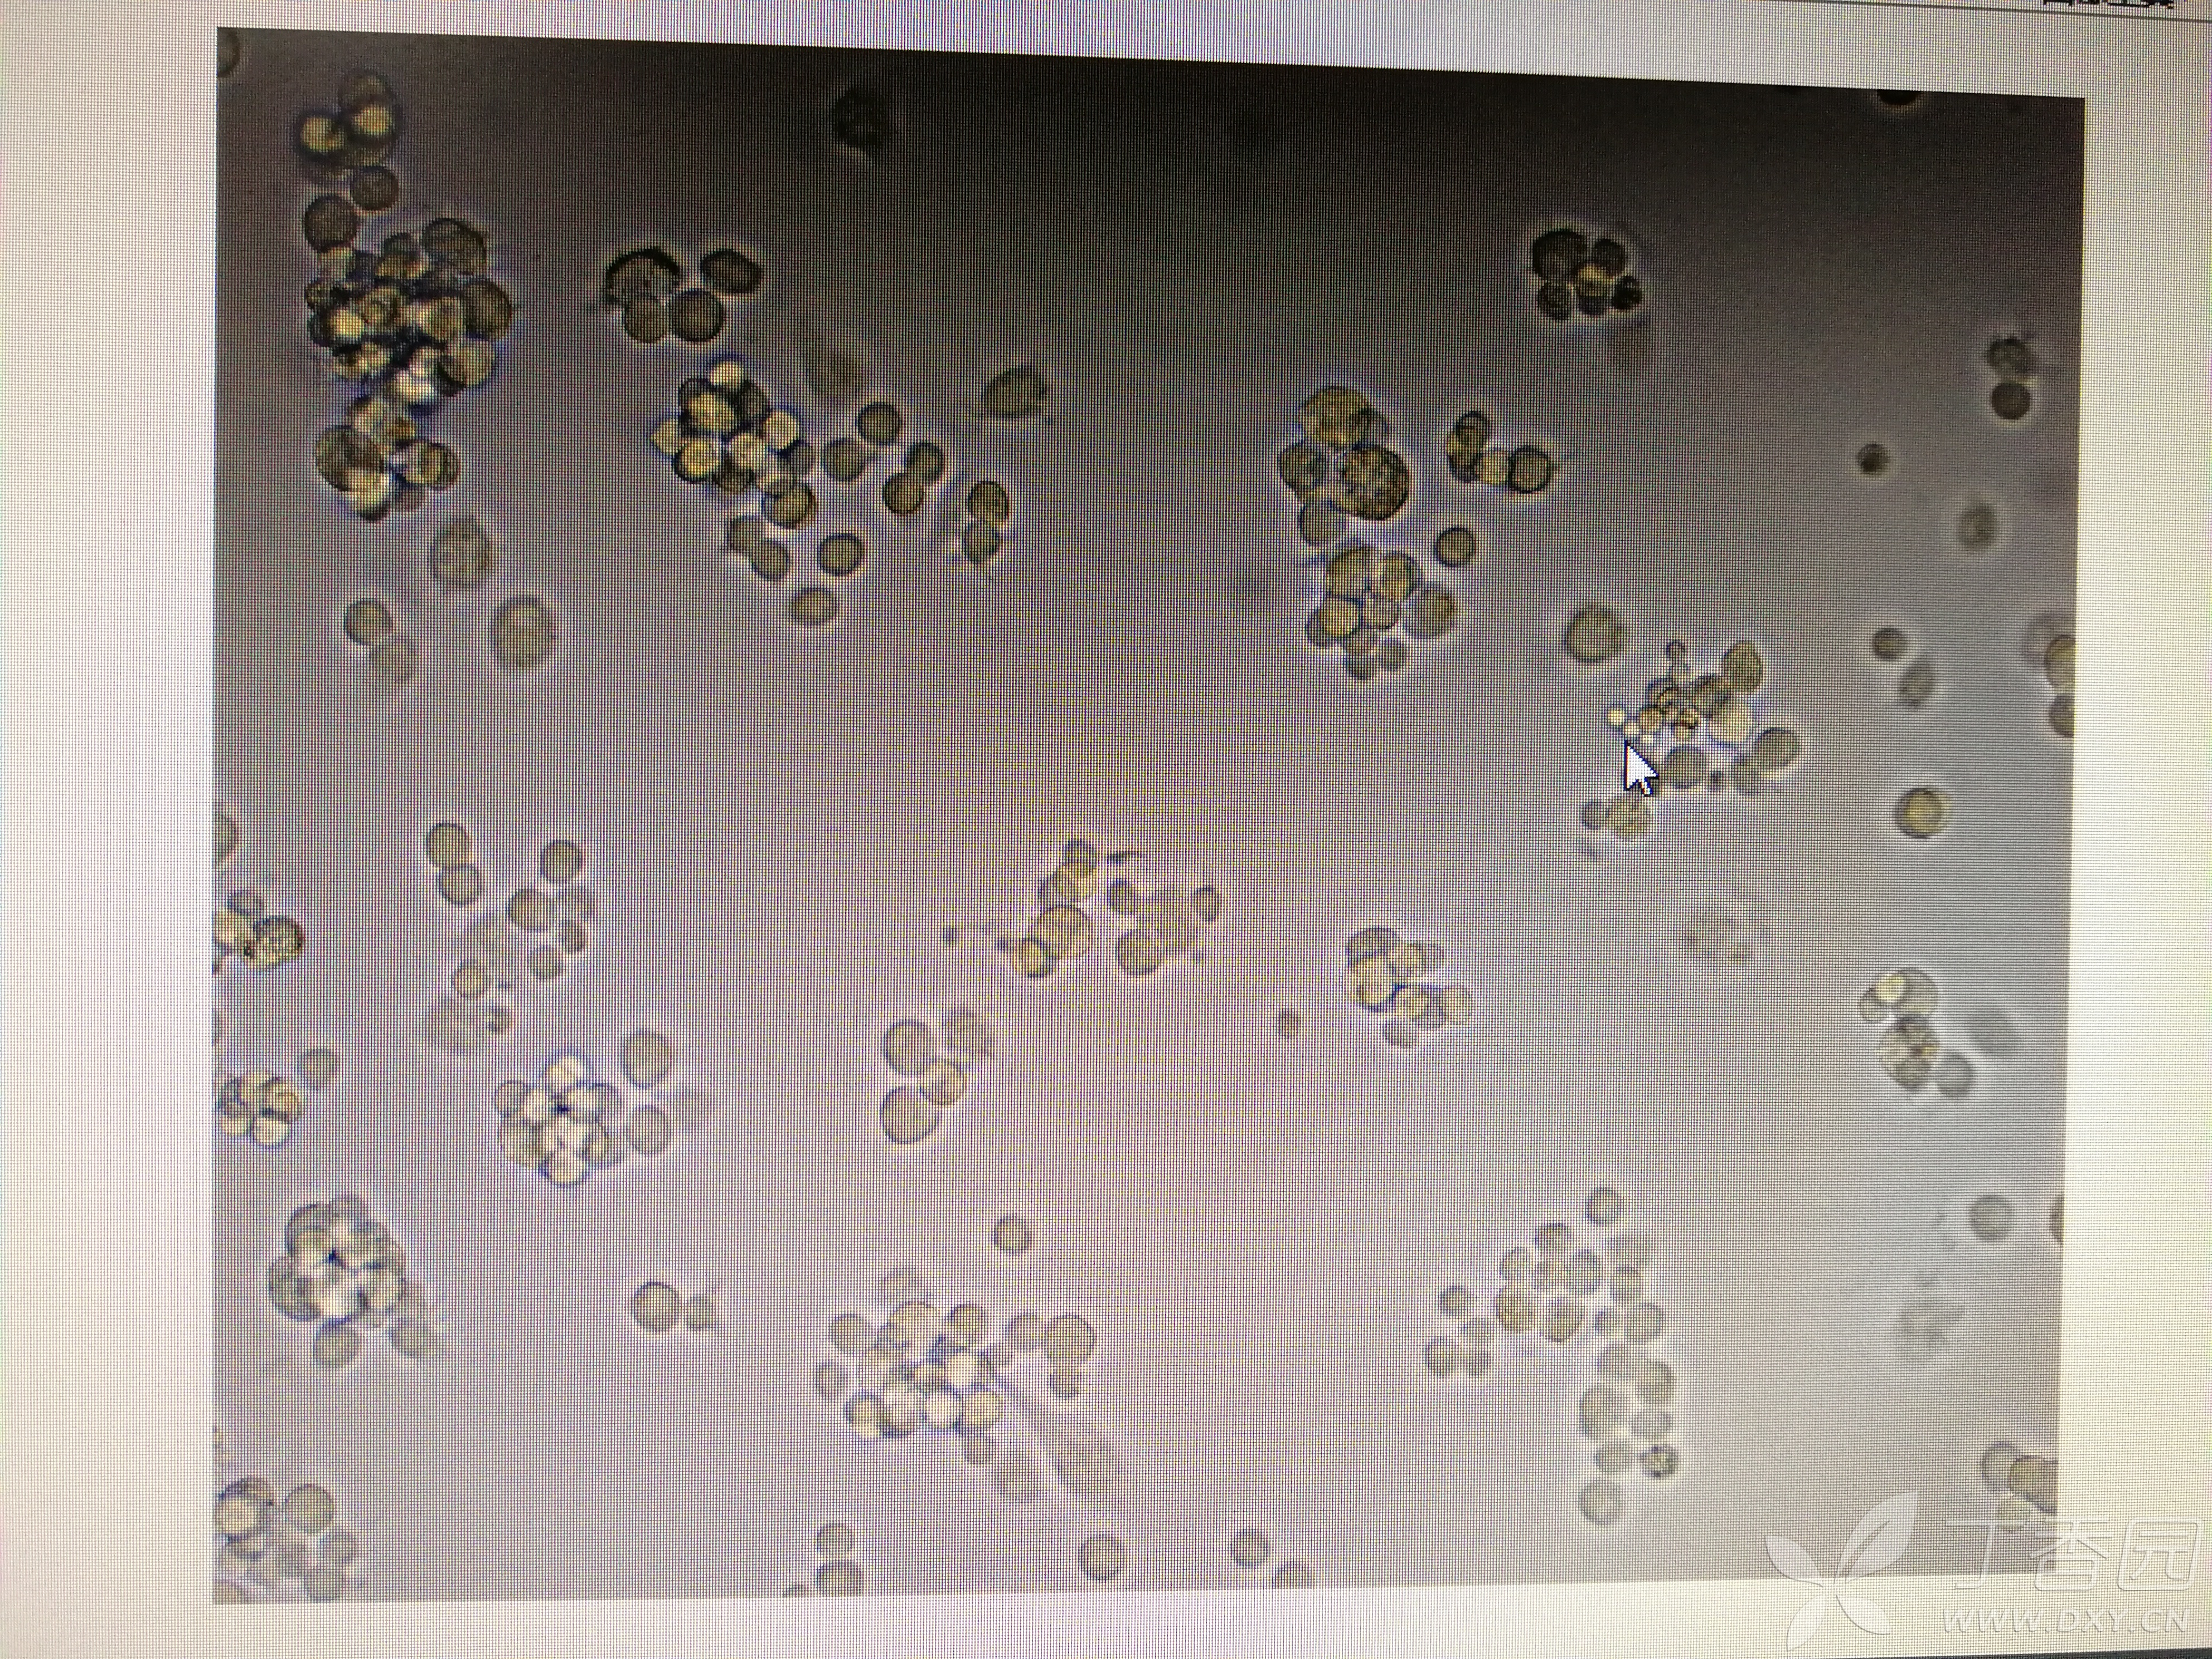 我的细胞也疑似被链球菌污染了.